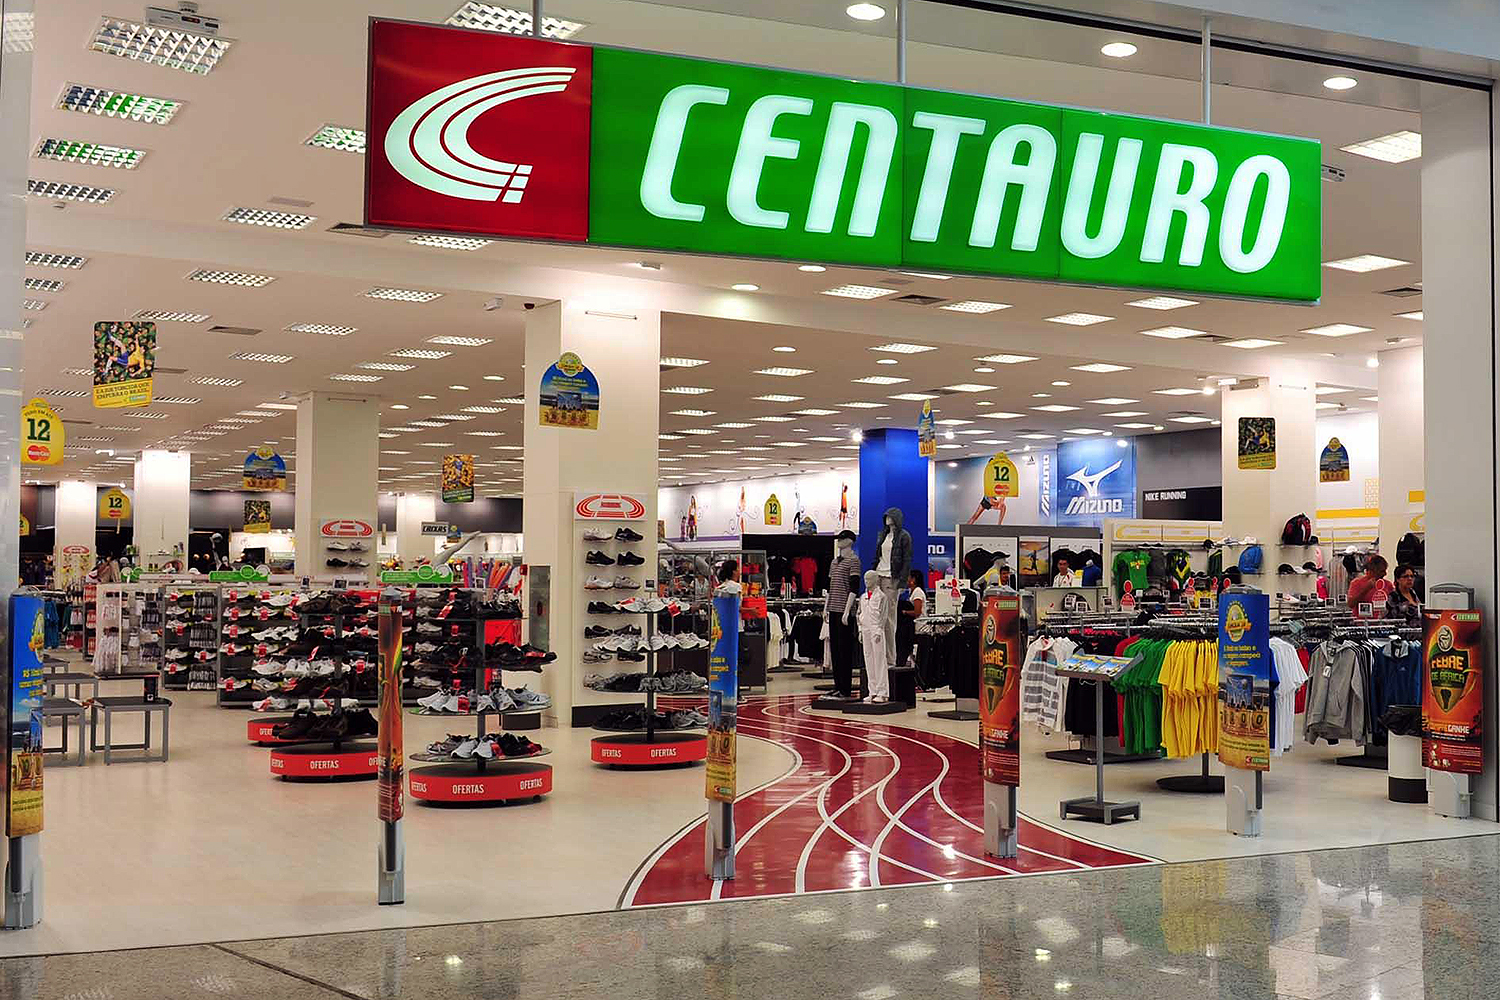 Centauro oferece descontos para retirada na loja - Mercado&Consumo